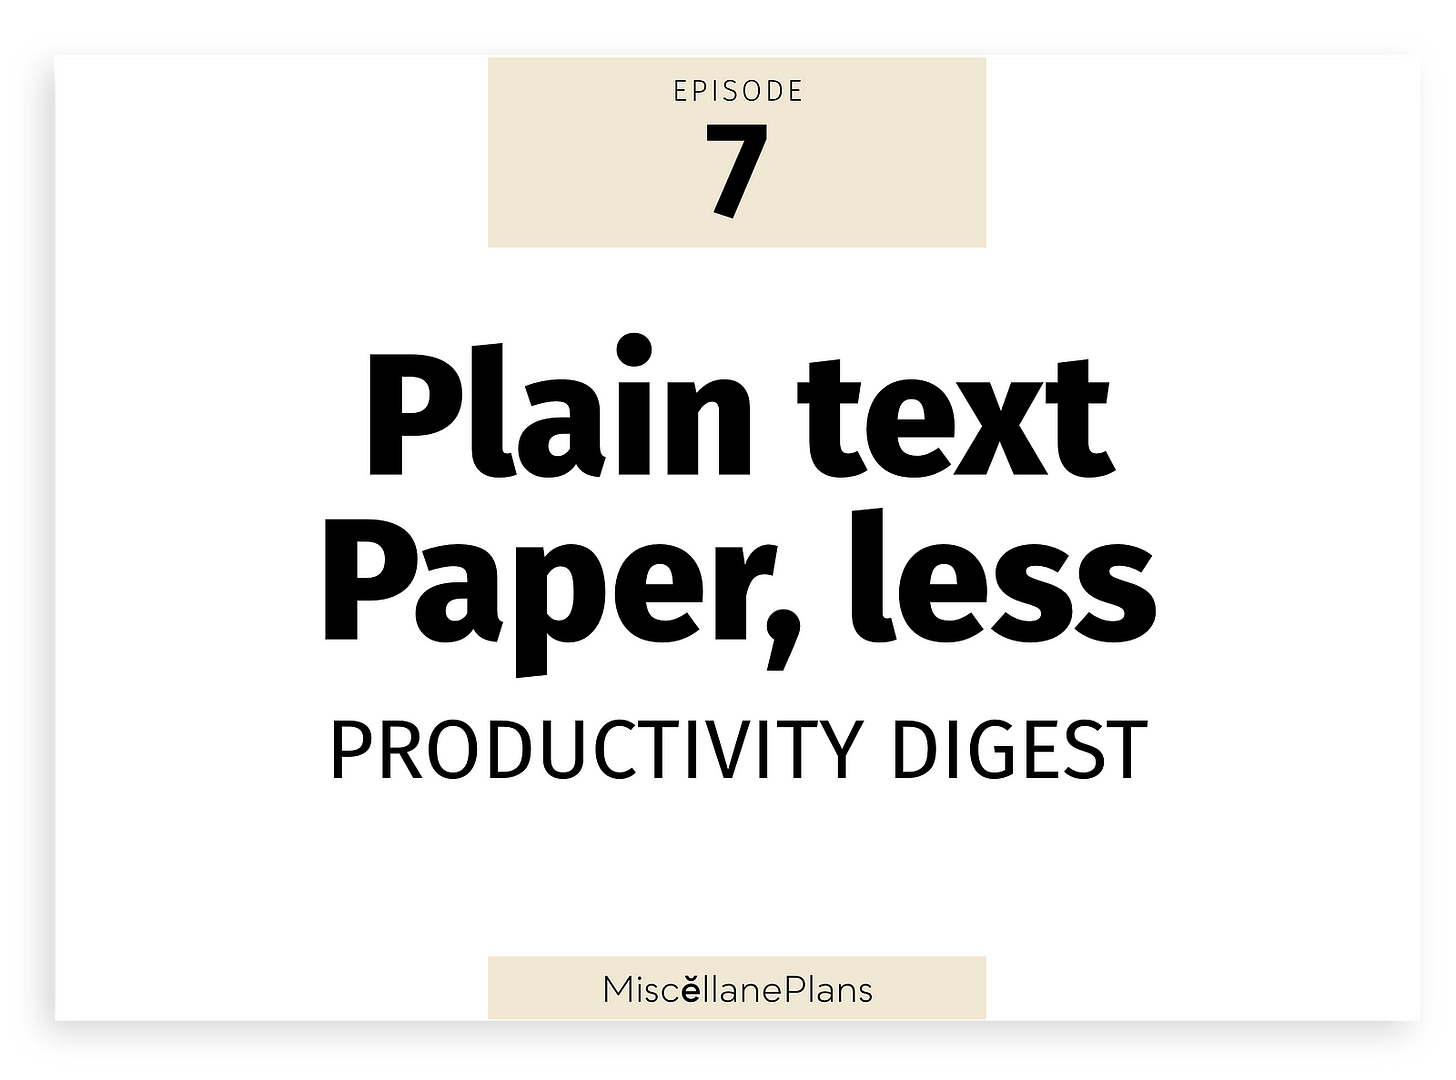 Text: Plain Text Paper, less Productivity Digest 7